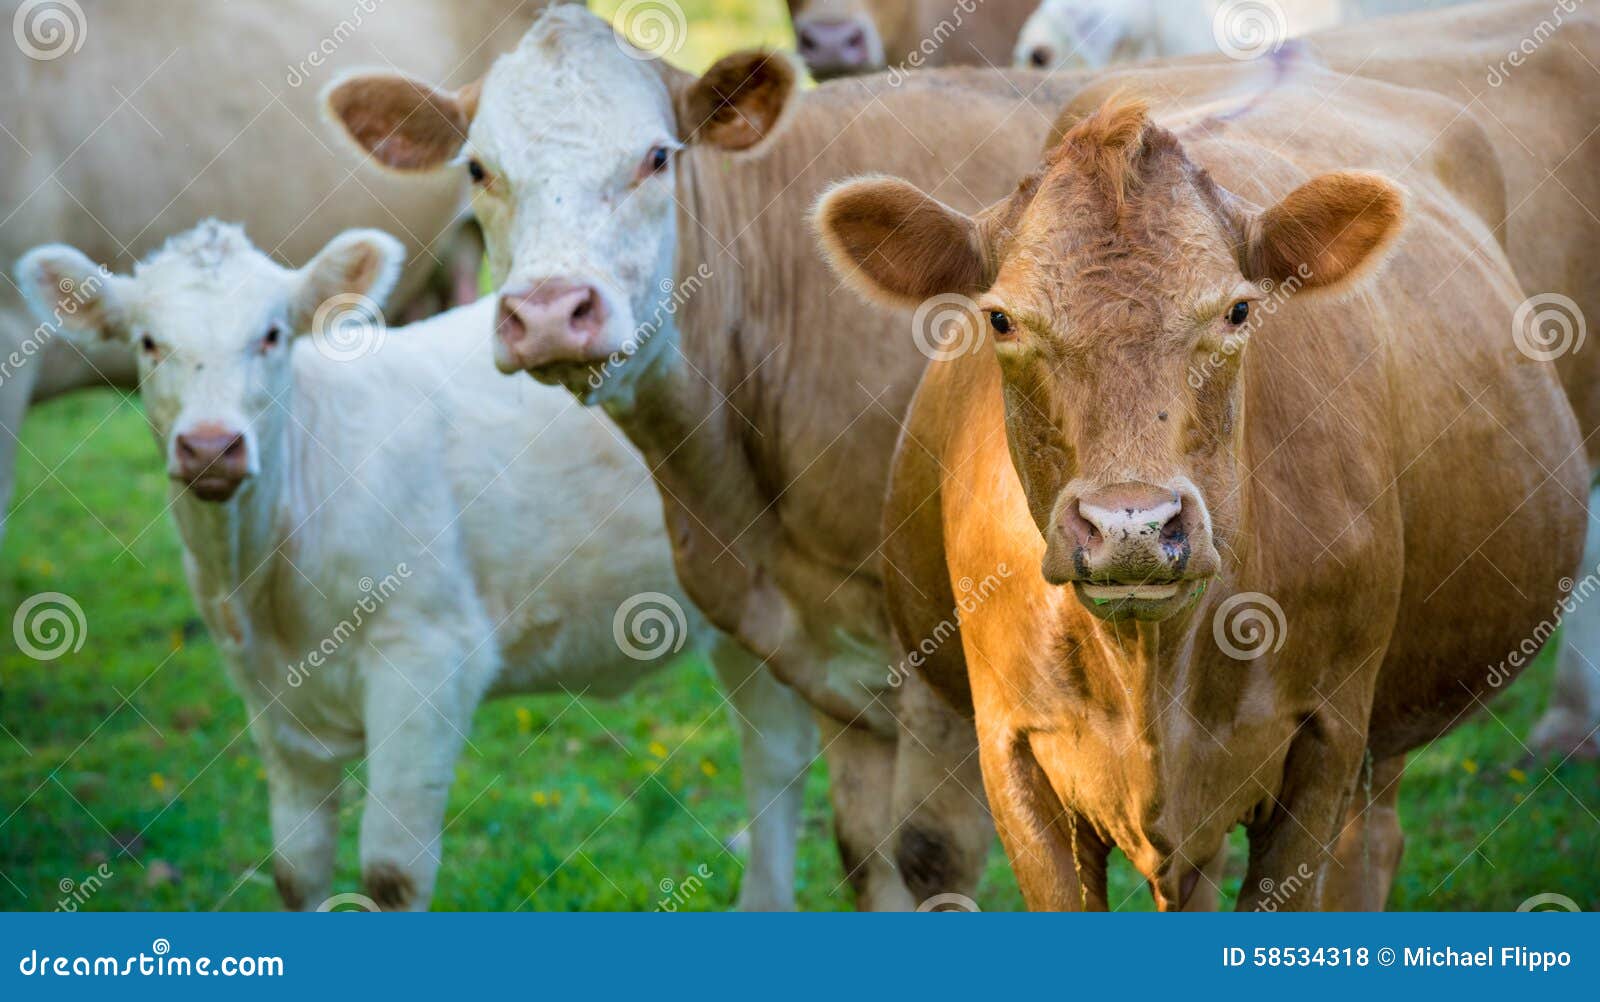 herd of beef cattle